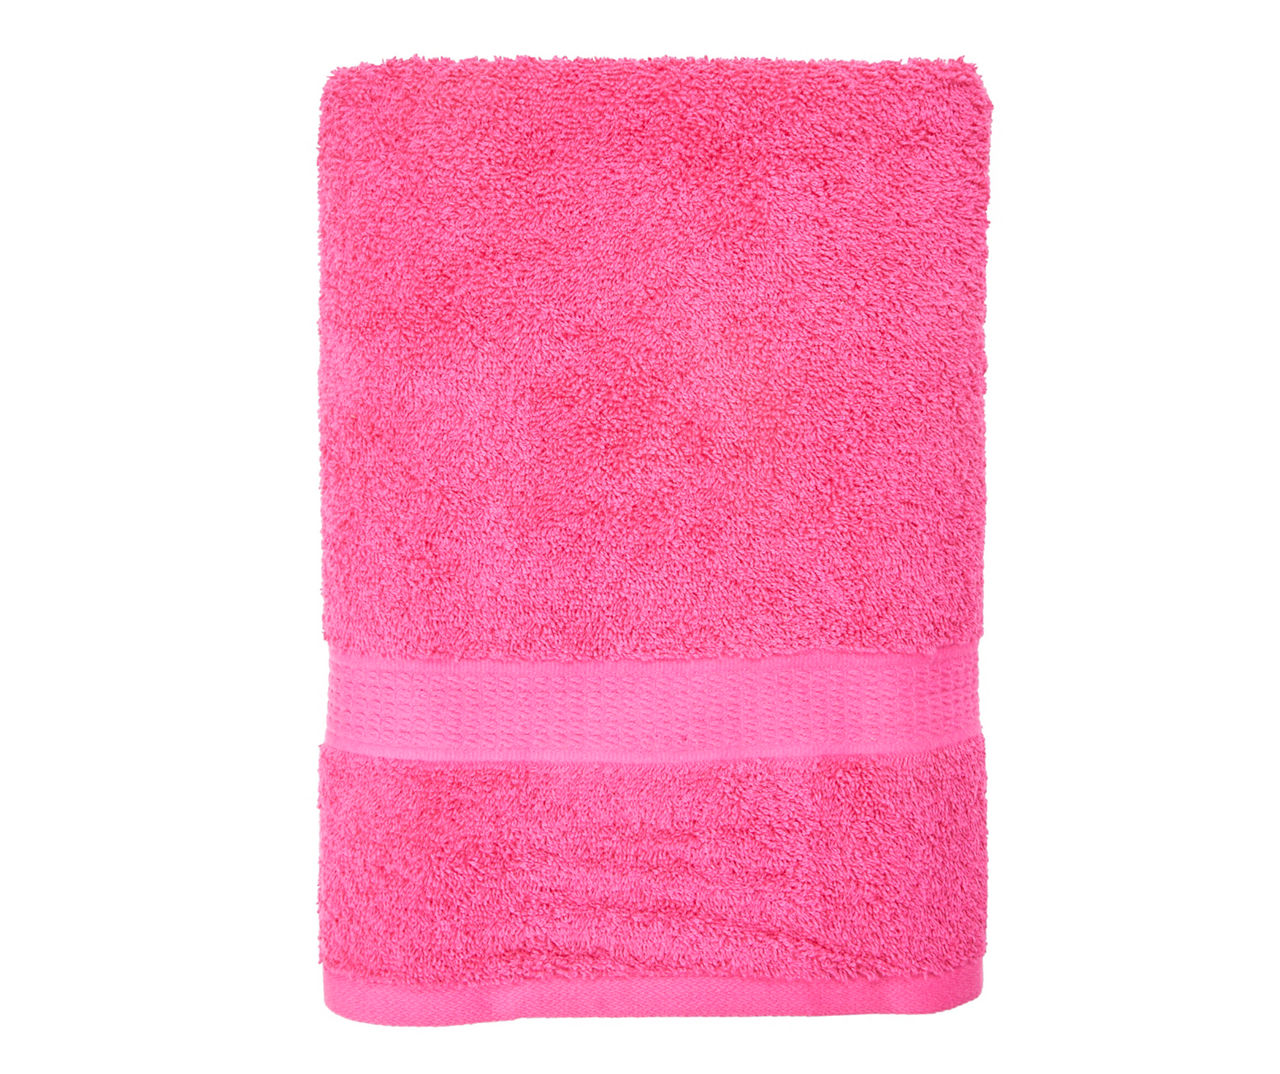 STP Hot Pink Bath Towel | Big Lots